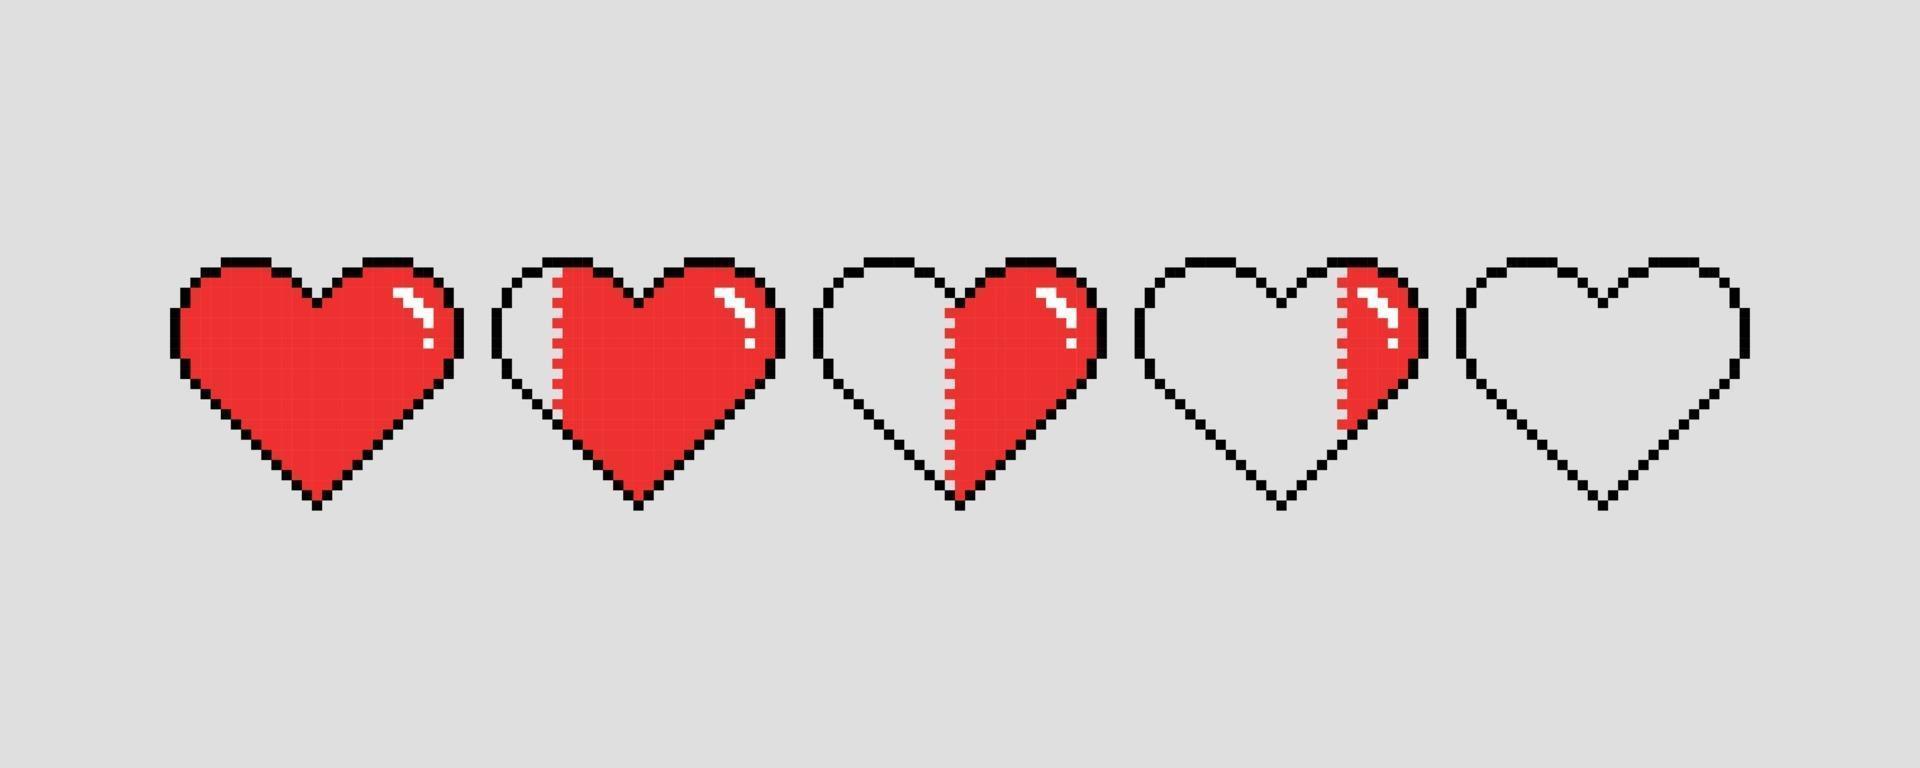 pixel art harten voor spel. verschillende gezondheidsindicatoren voor games vector